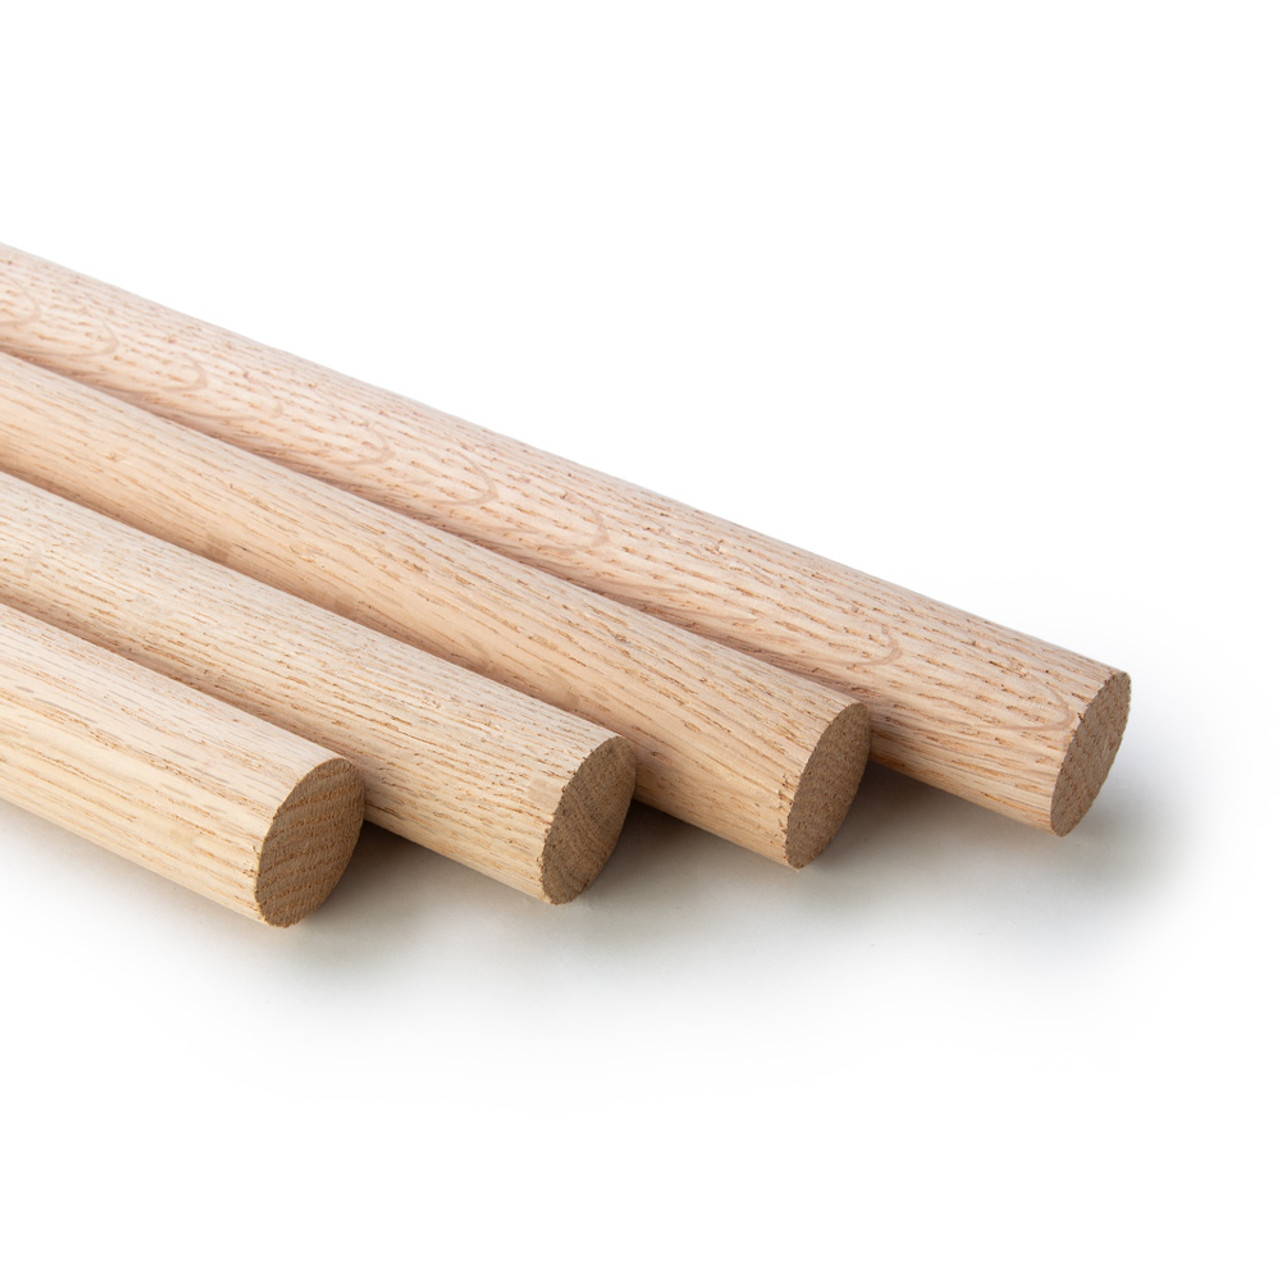 1-1/4 x 36 Wood Dowel 